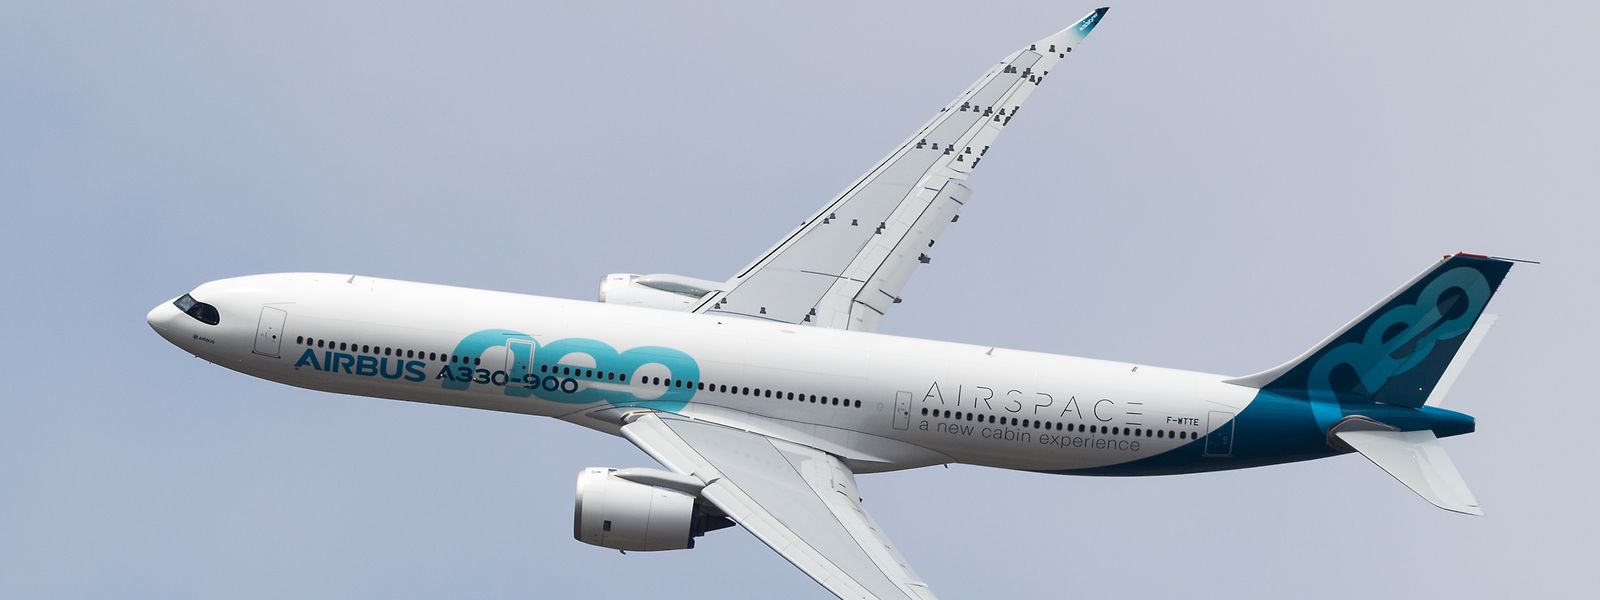 Pour assurer ses services, l'entreprise prévoit de faire embarquer passagers et marchandises à bord d'avions moins polluants, à l'image des A320 Neo et A321 Neo.